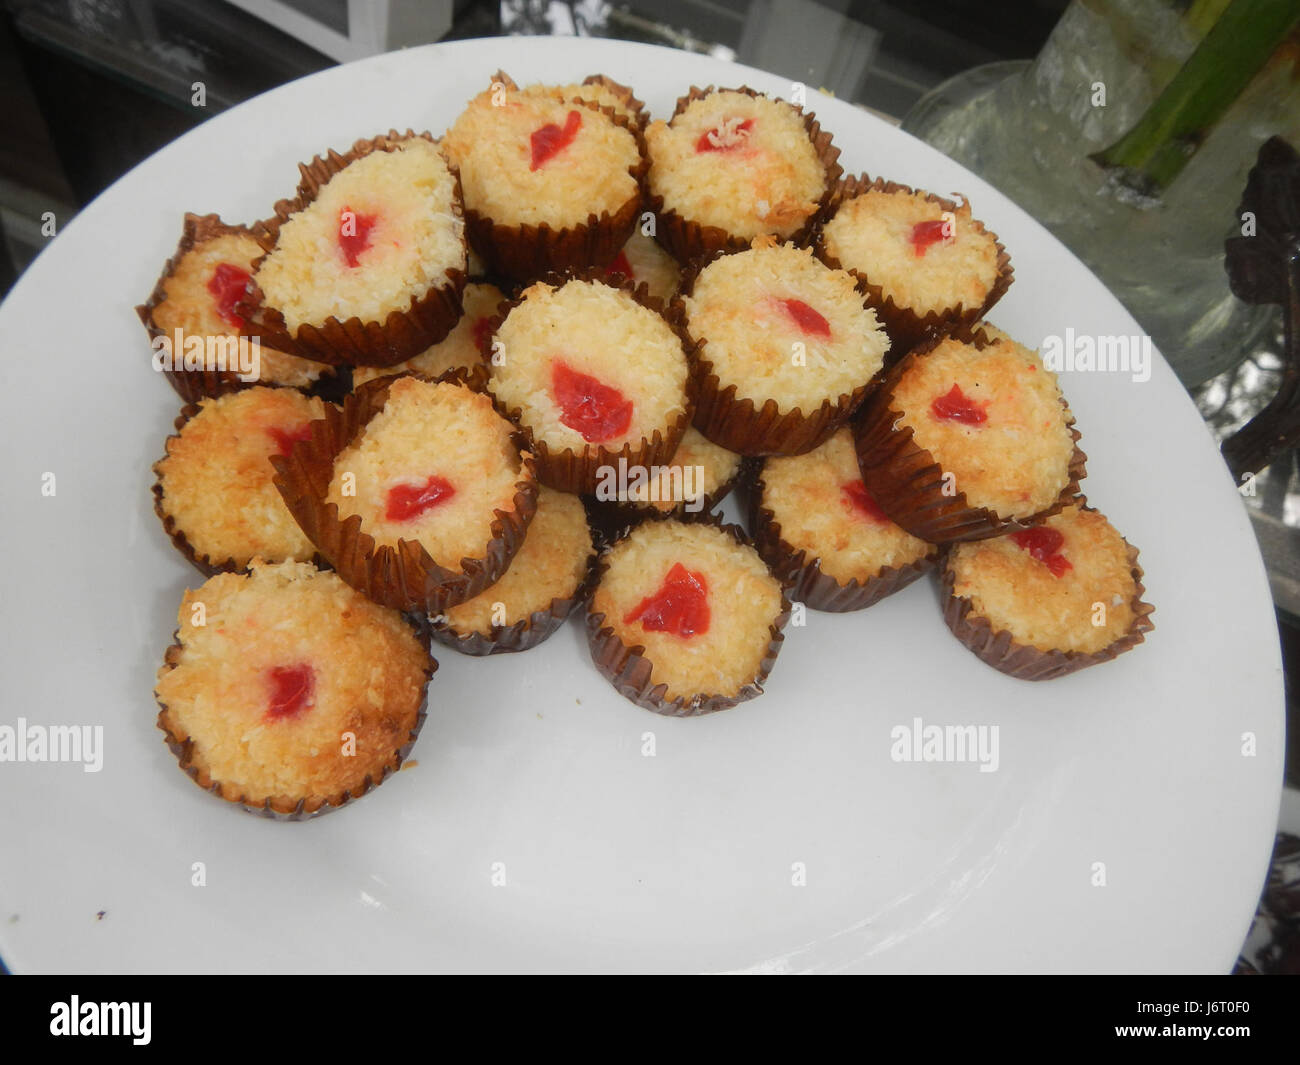 Philippines cakes immagini e fotografie stock ad alta risoluzione - Alamy